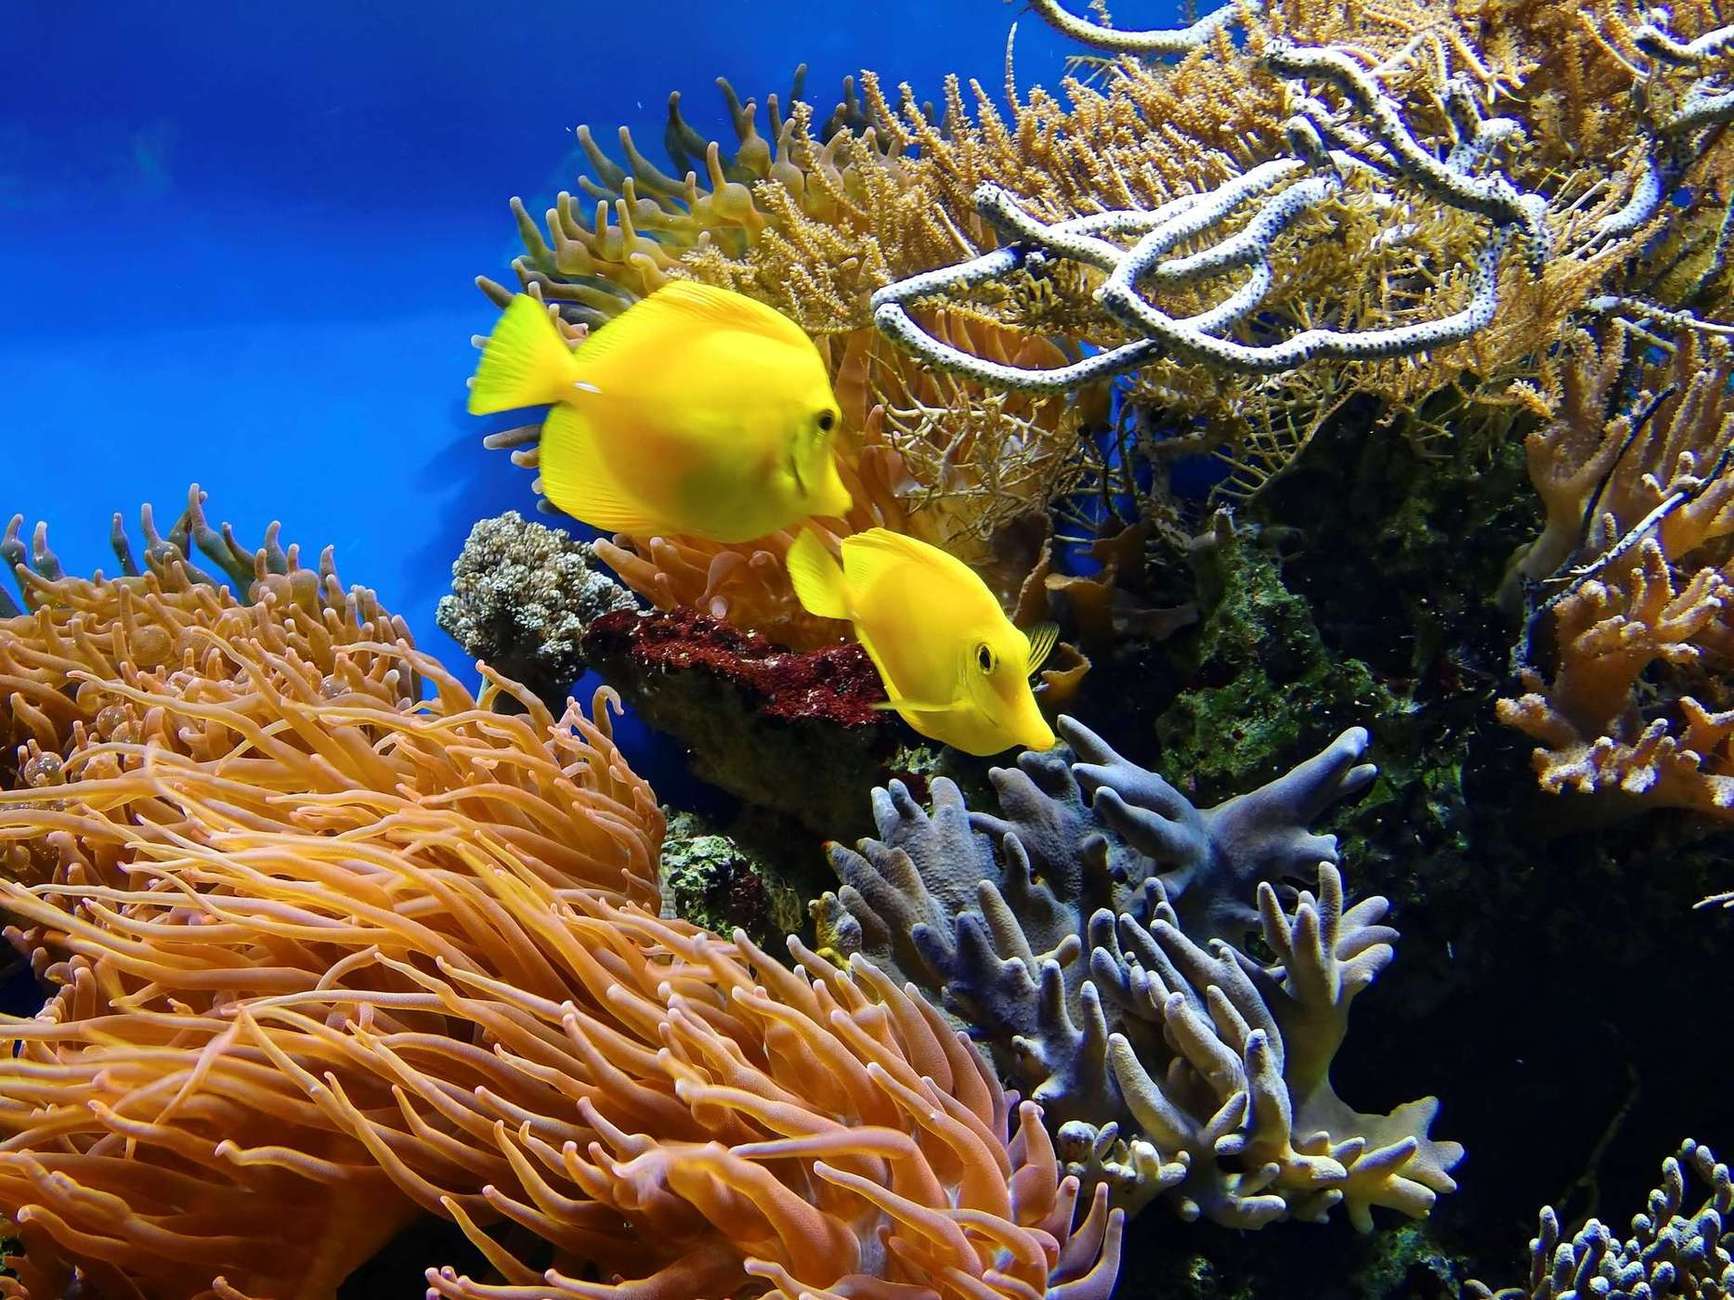 У вас є унікальна можливість взяти шефство над коралом. Для цього необхідно зануритися в кораловий сад і вибрати собі «підопічного». Спостерігати за підопічним можна за допомогою фотозвітів, що приходитимуть з готелю